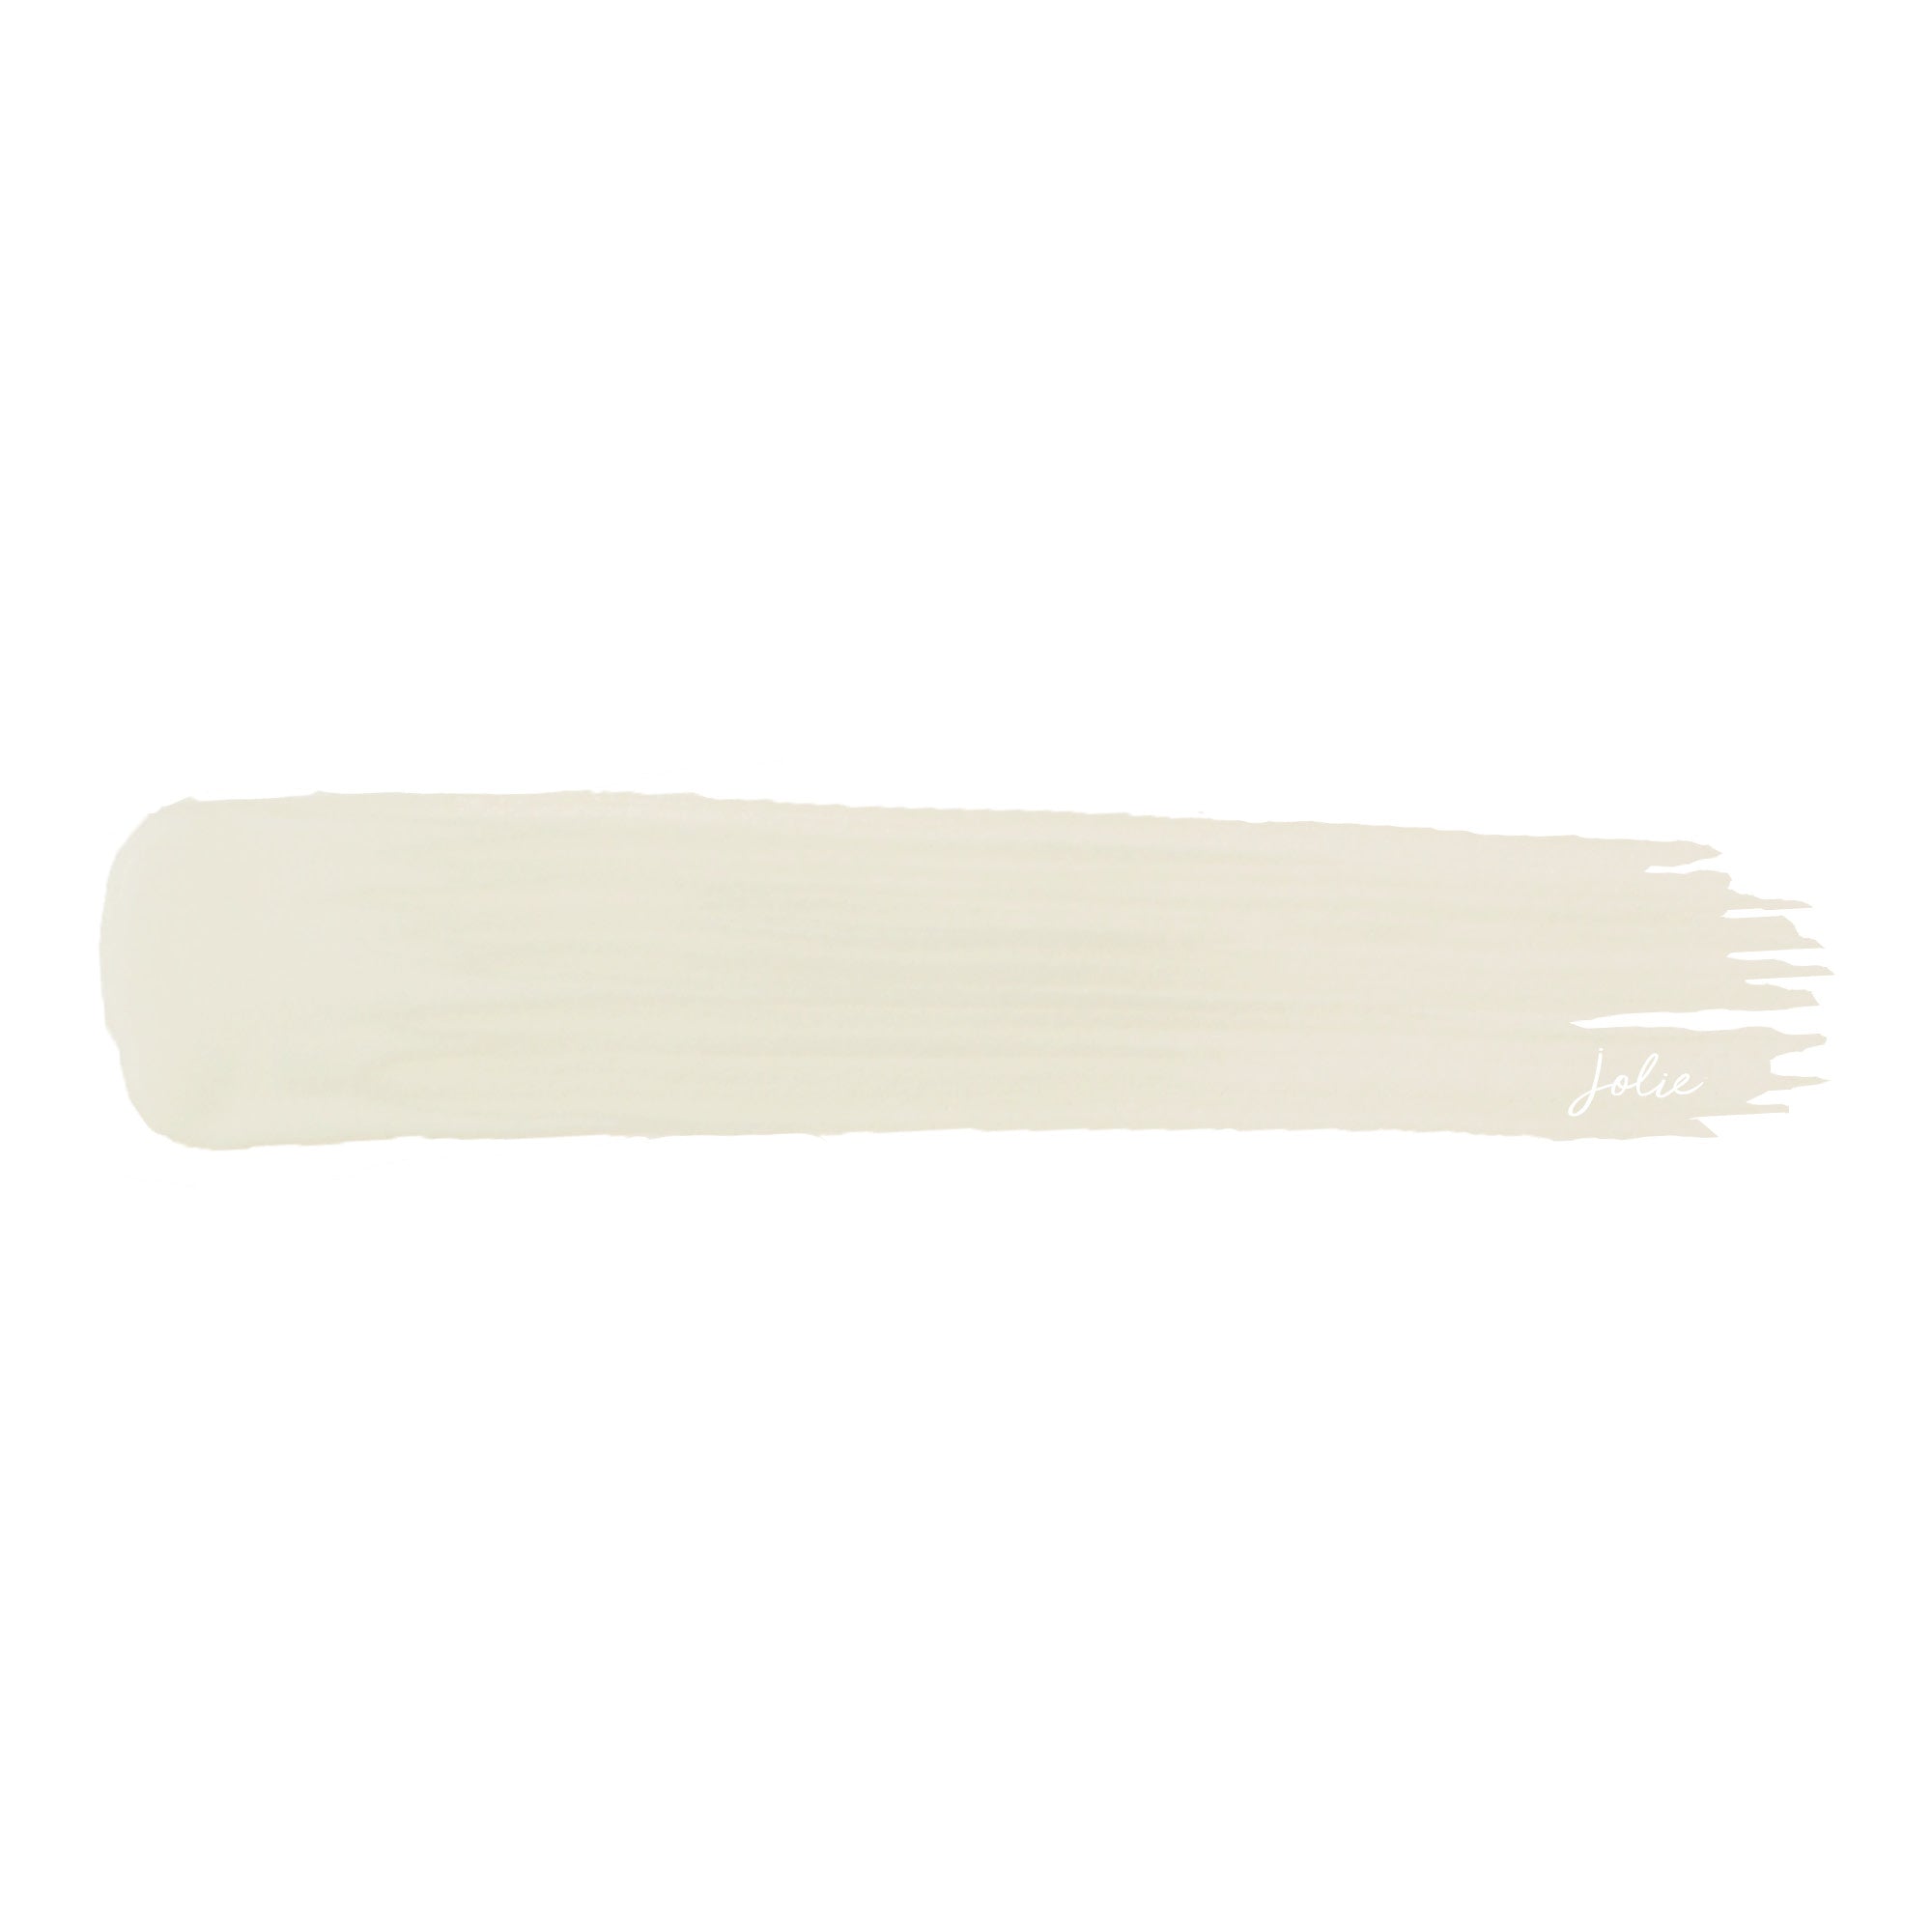 Jolie Home Paint- Antique White - Dovetails llc